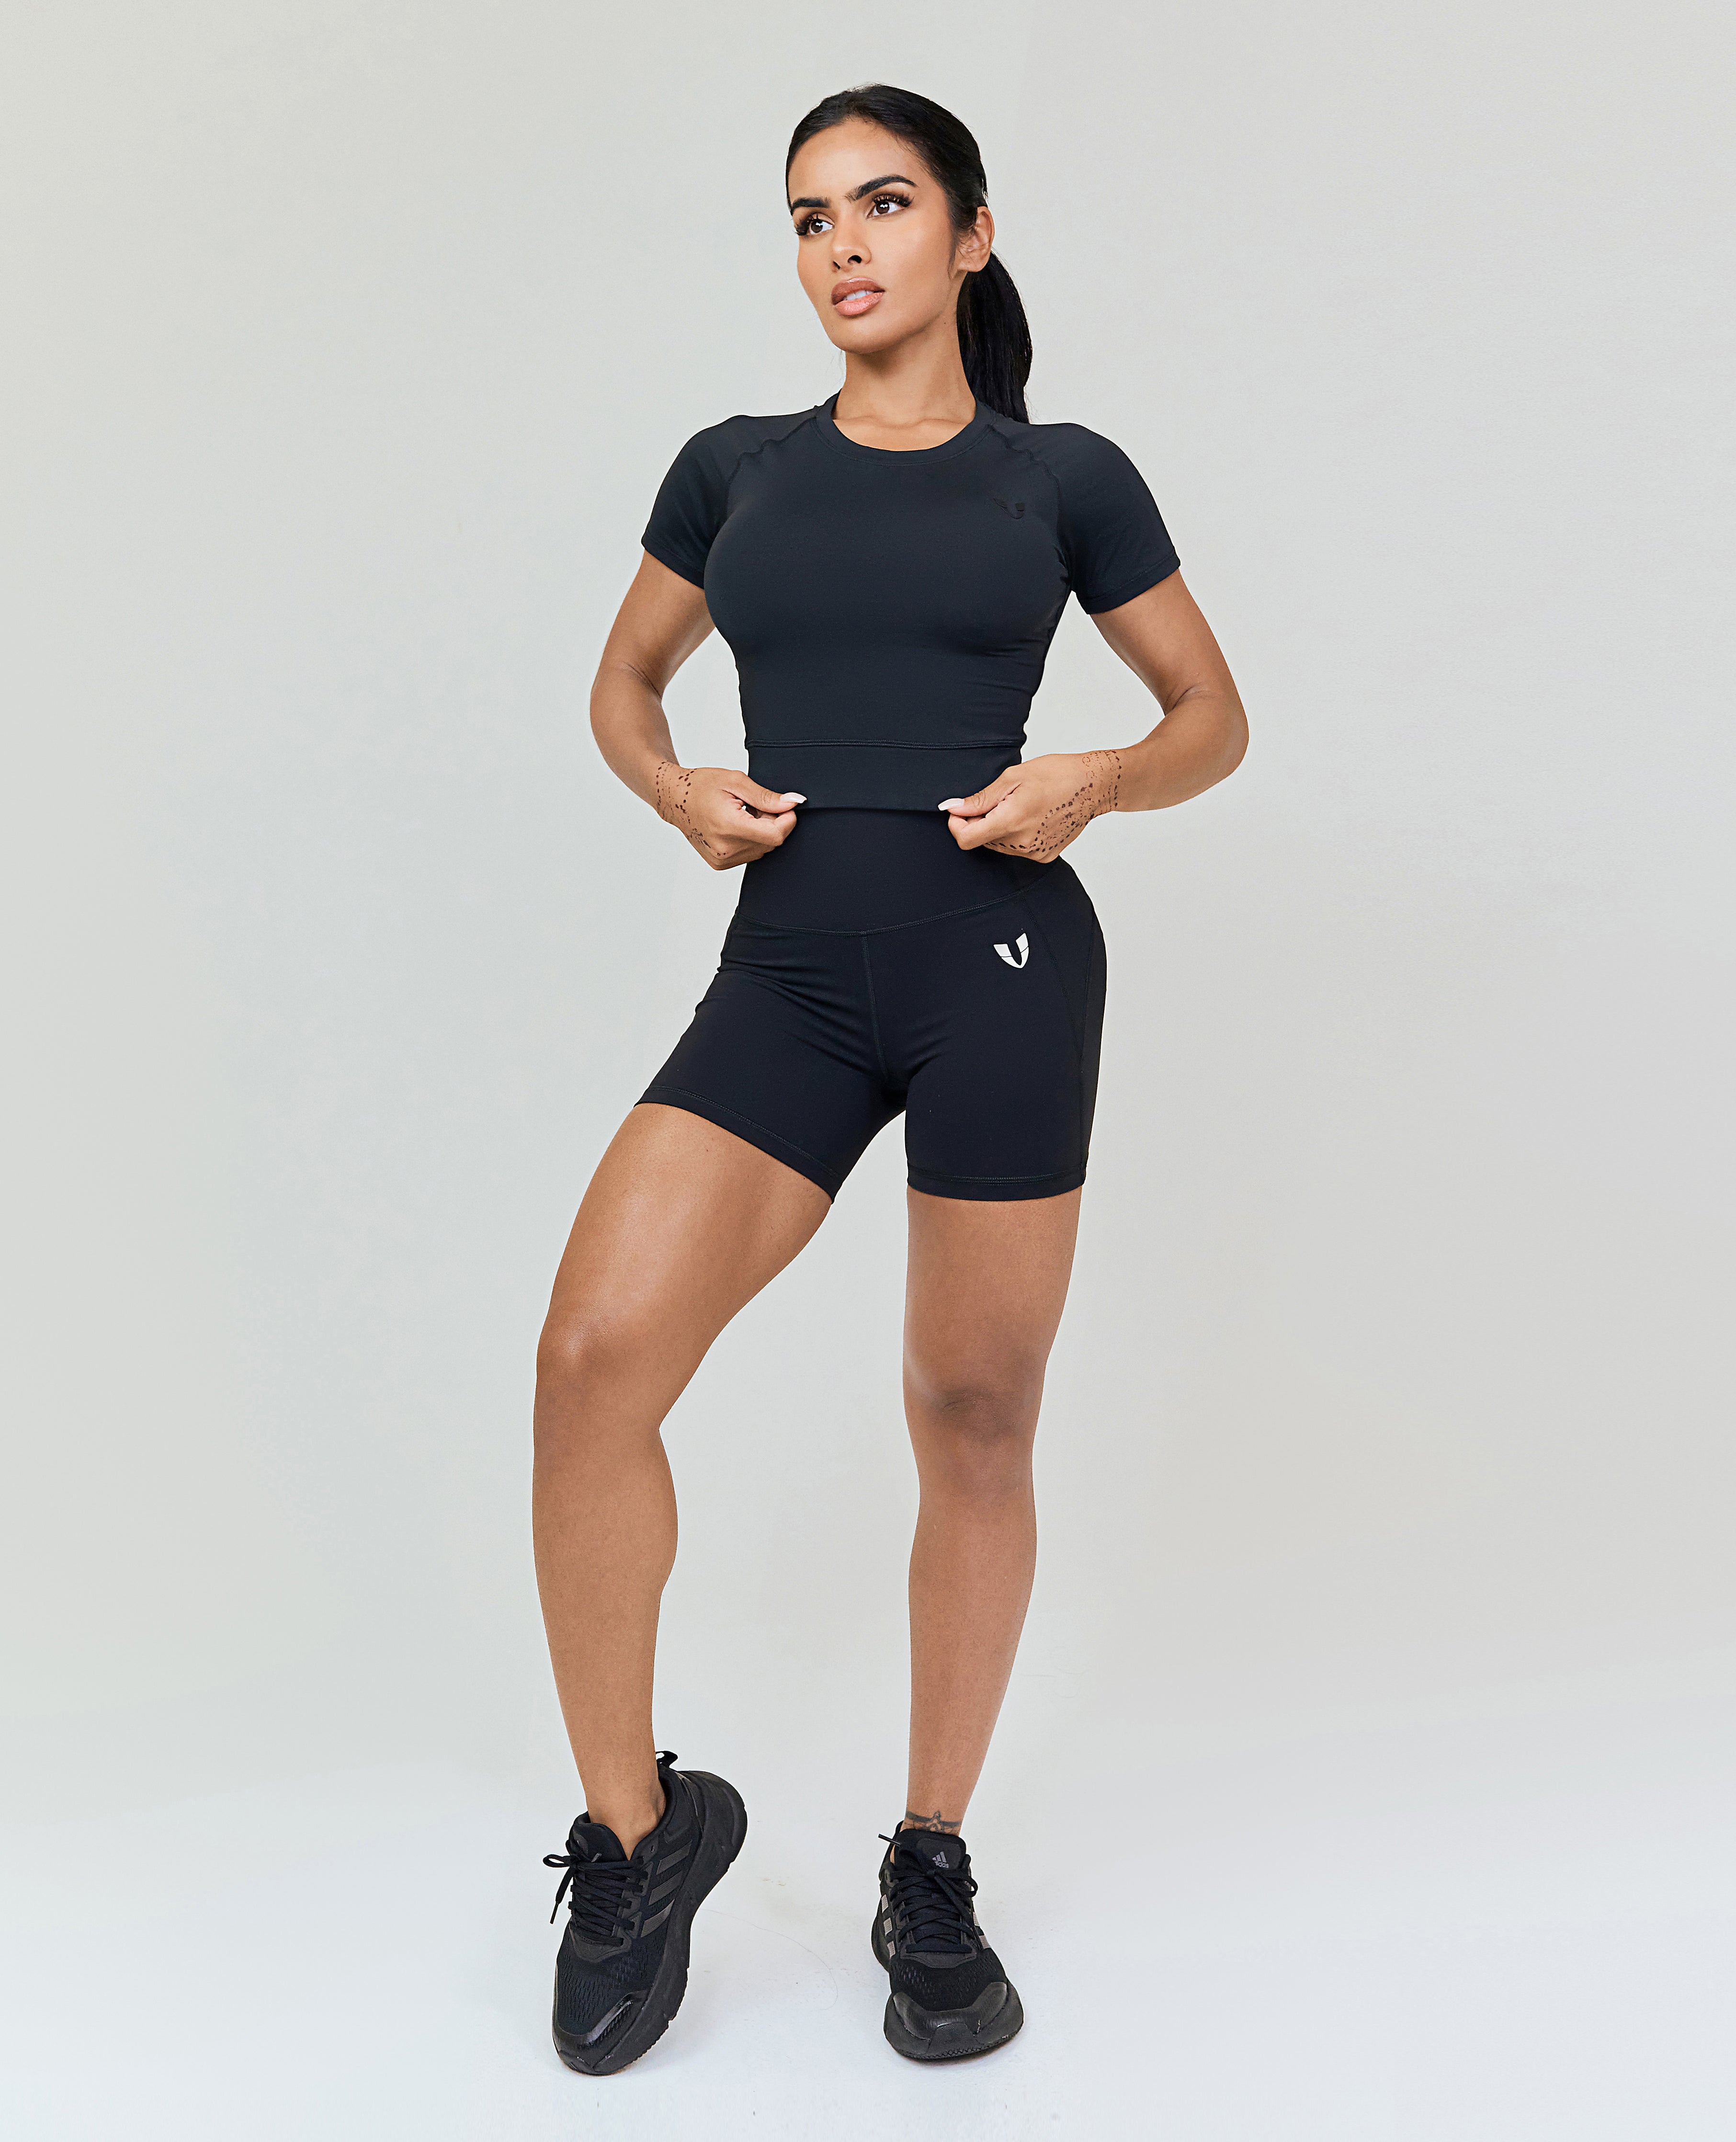 Training Tight Shorts - Black